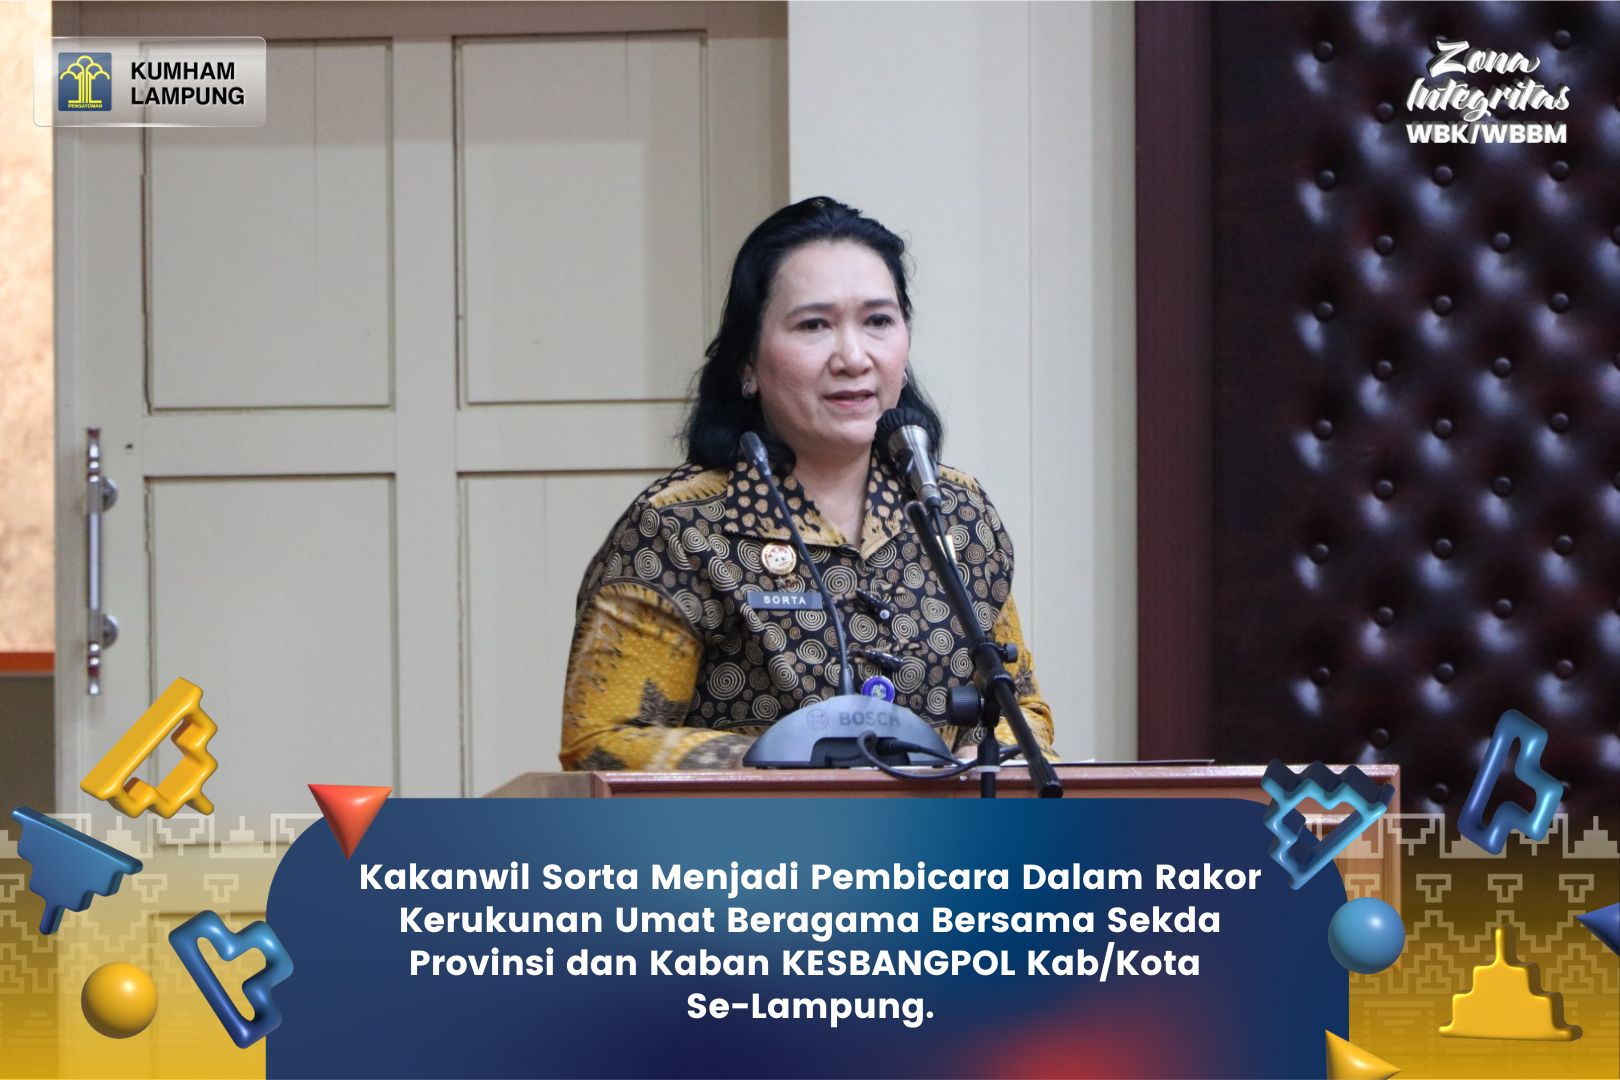 Kakanwil Sorta Menjadi Pembicara Dalam Rakor Kerukunan Umat Beragama Bersama Sekda Provinsi dan Kaban Kesbangpol Kab/Kota Se-Lampung